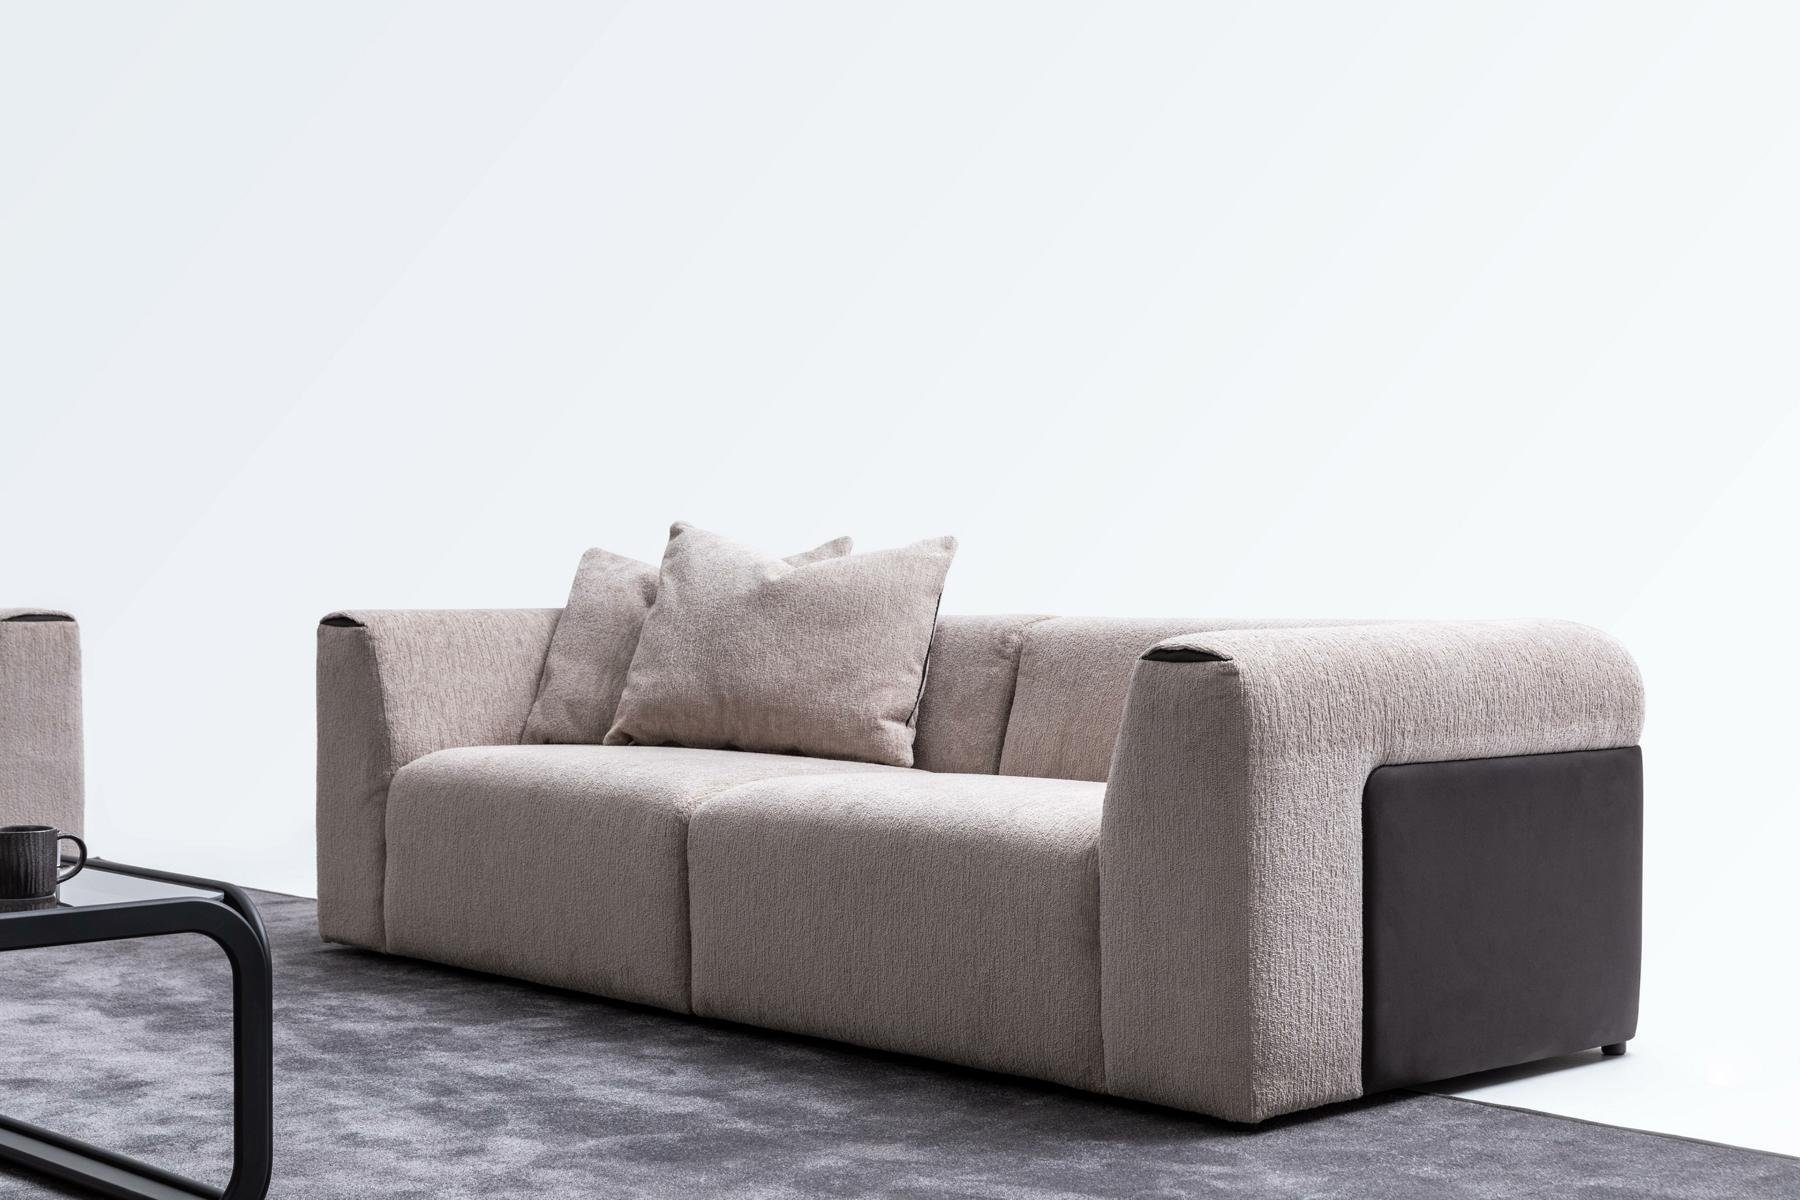 JVmoebel 3-Sitzer Modernes Sofa Luxus Wohnzimmer Polstersofa Couch 3 Sitzer Design, 2 Teile, Made in Europe